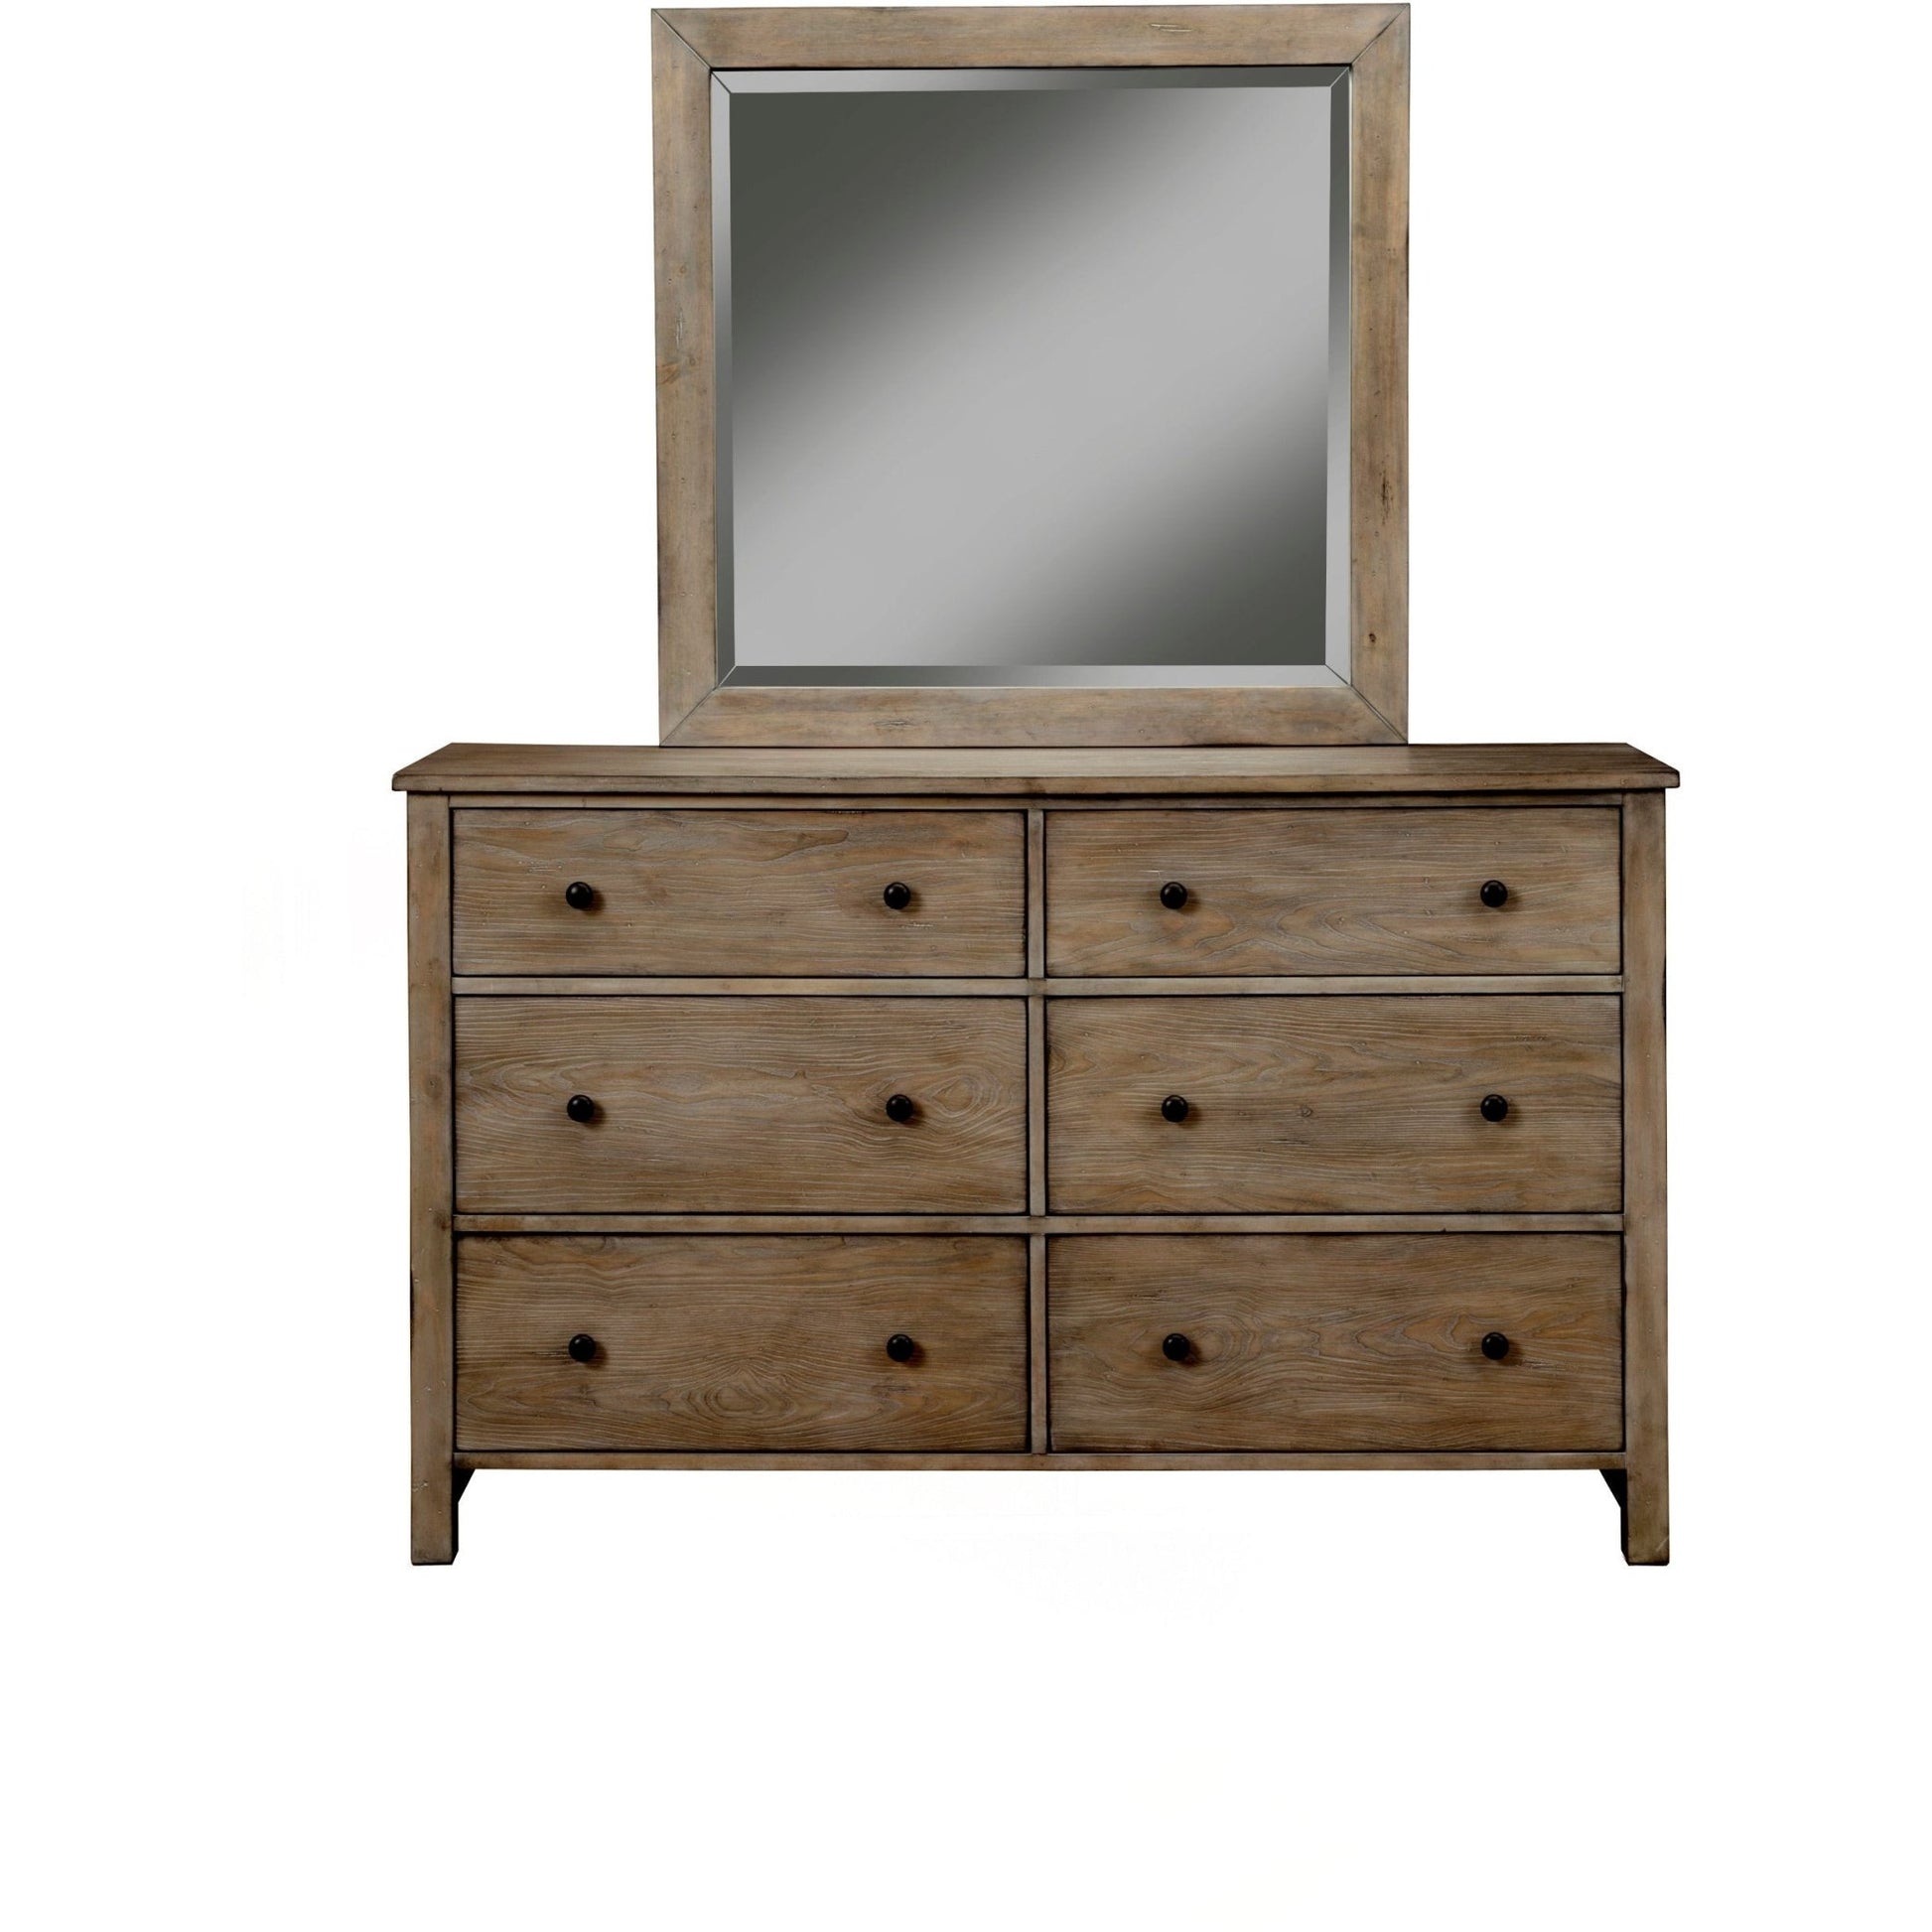 Classic Dresser & Mirror - Origins by Alpine